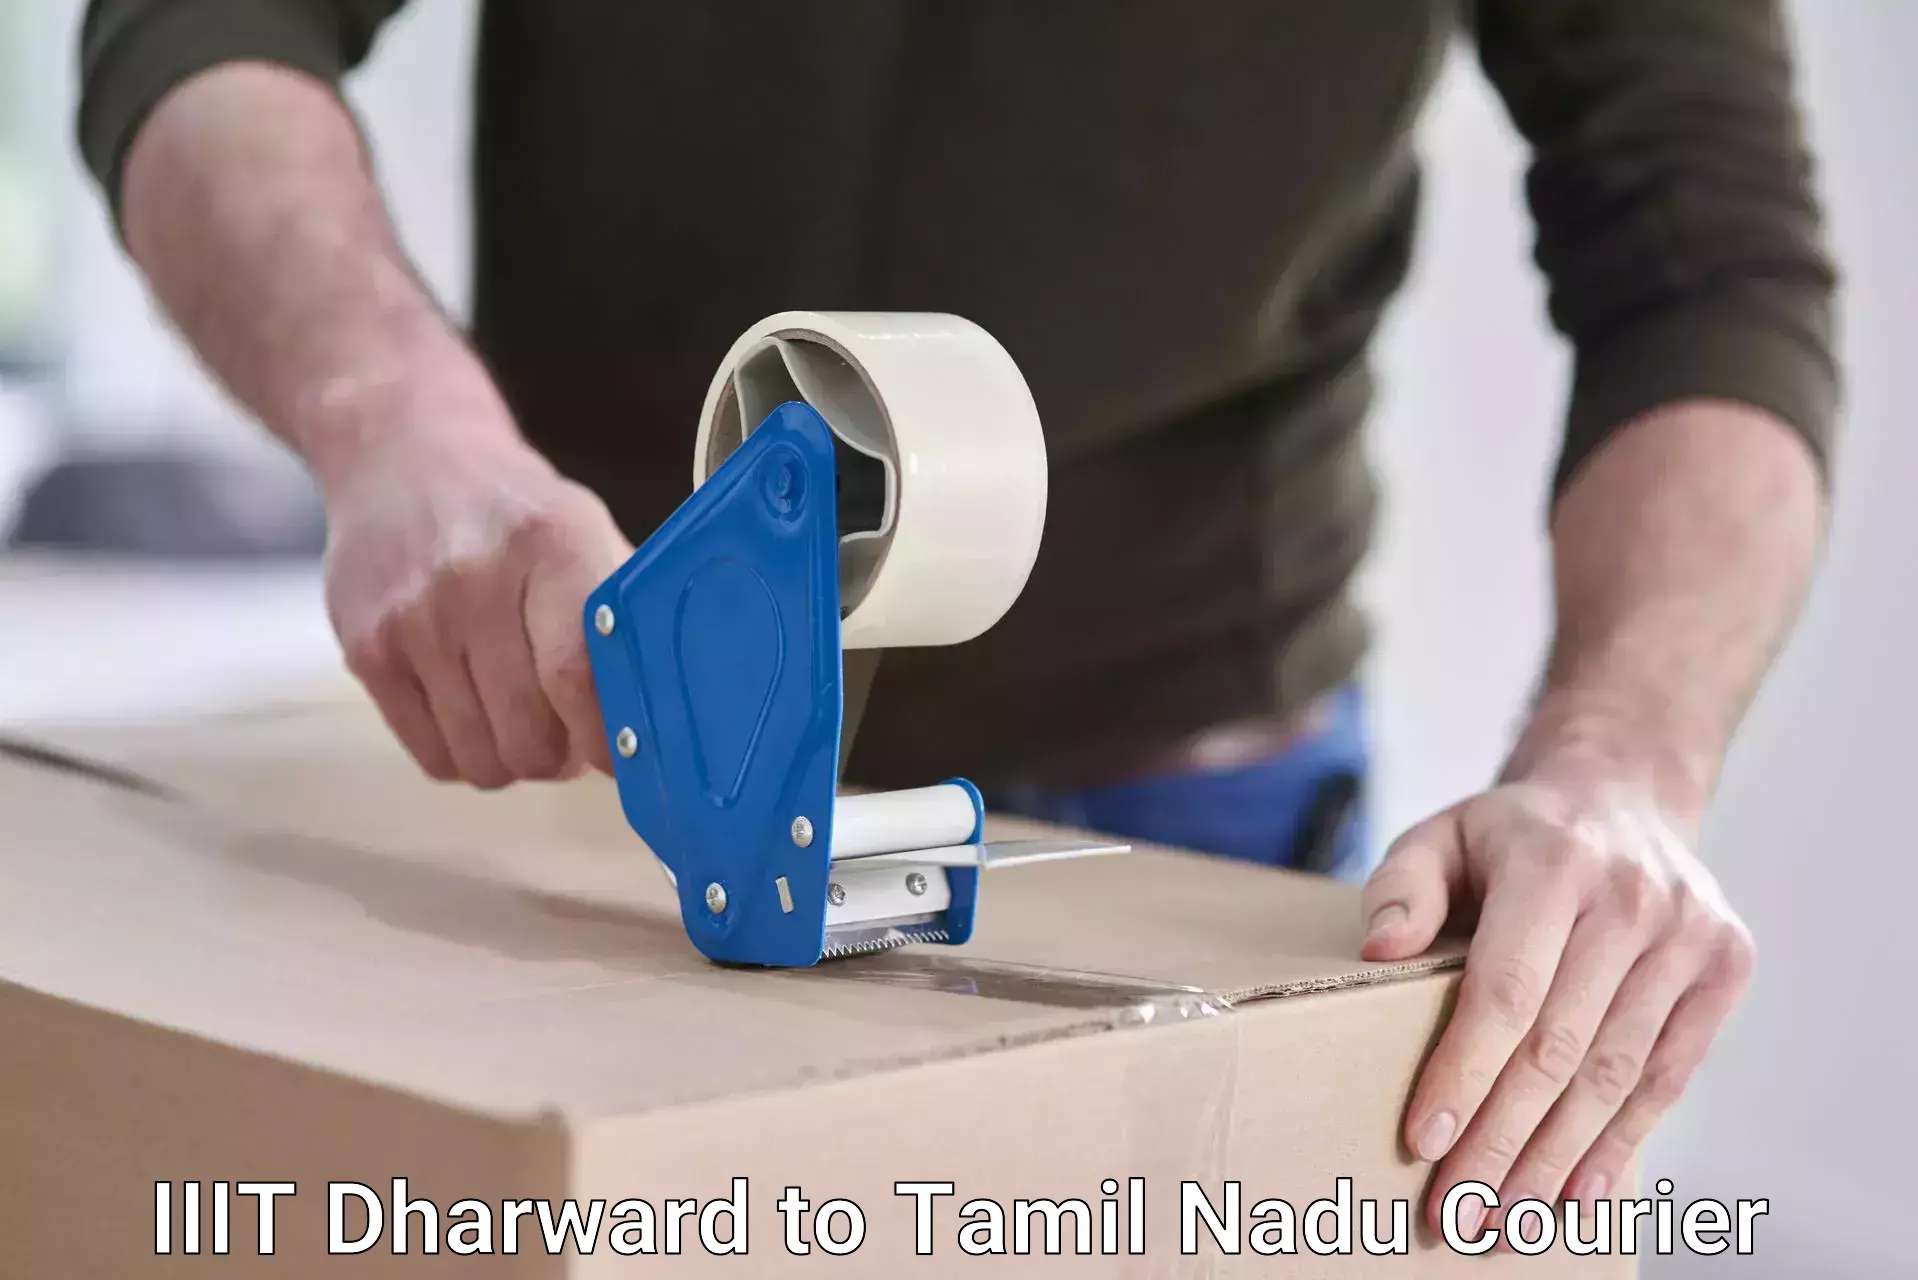 Customer-centric shipping IIIT Dharward to Tamil Nadu